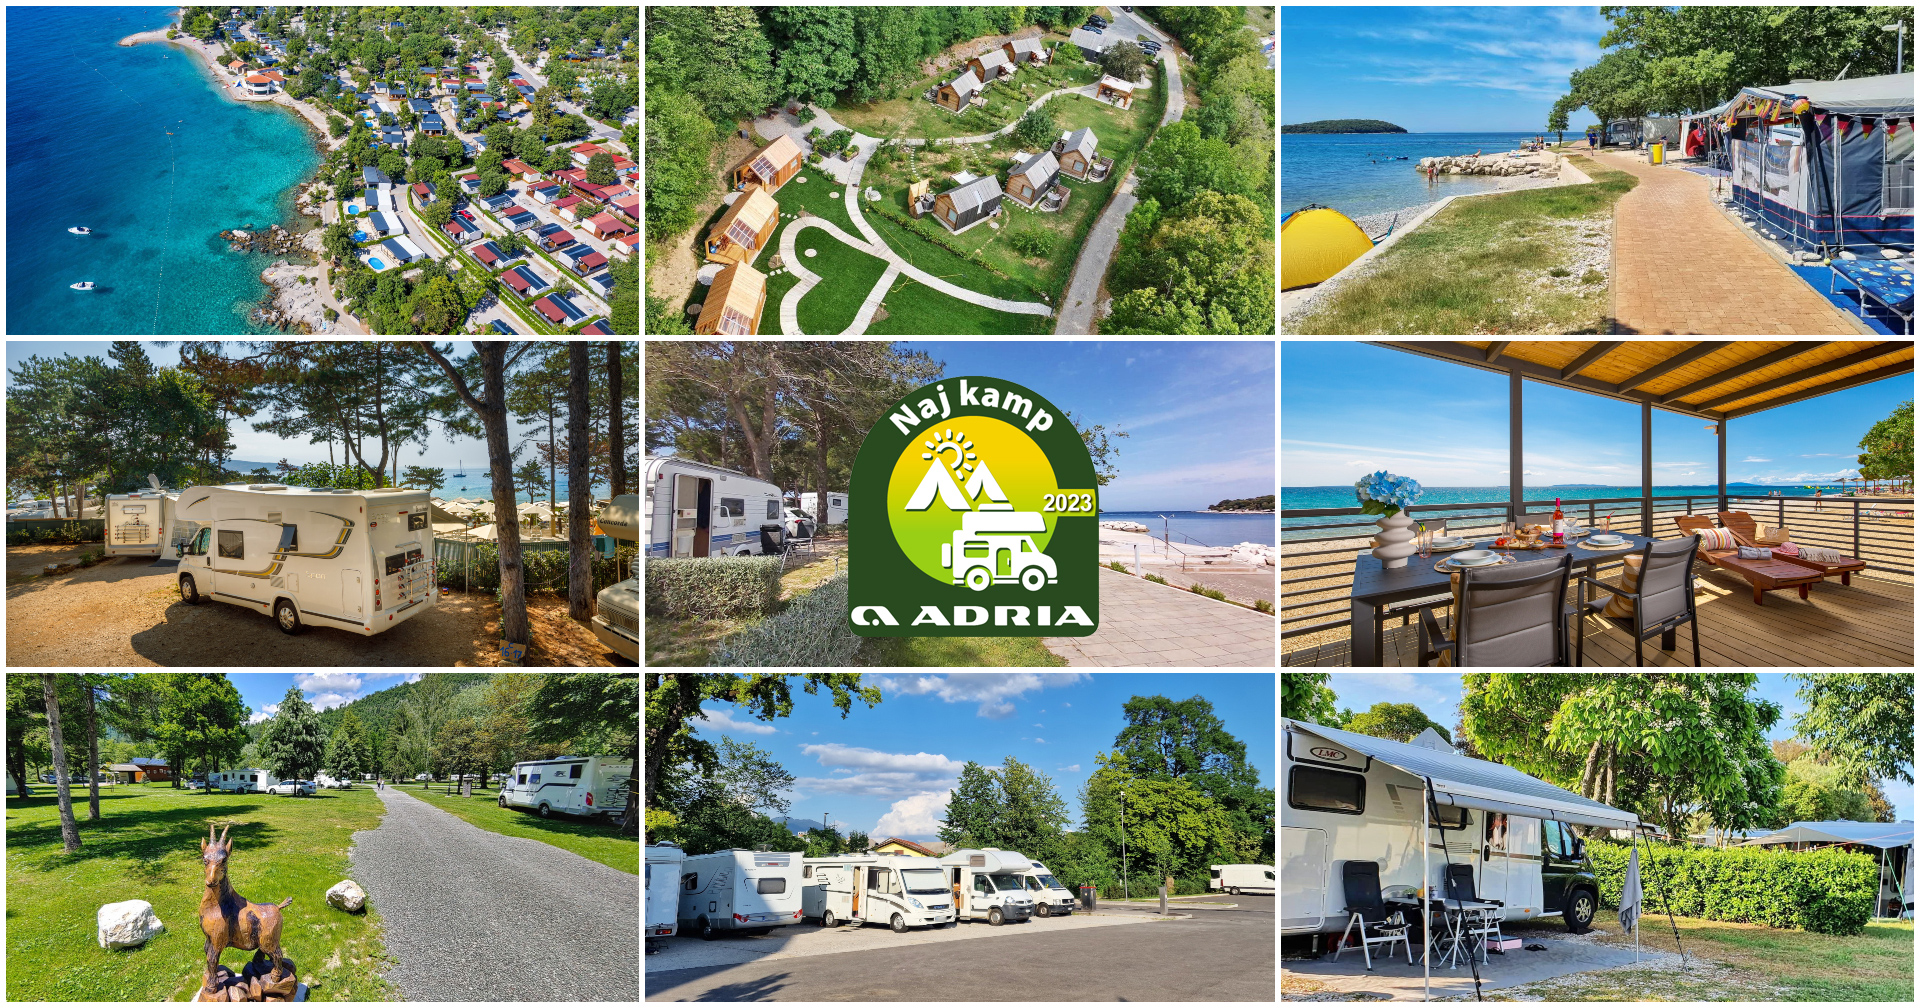 Naj kamp Adria 2023 - glasujte za najboljše kampe, glamping resorte in postajališča za avtodome